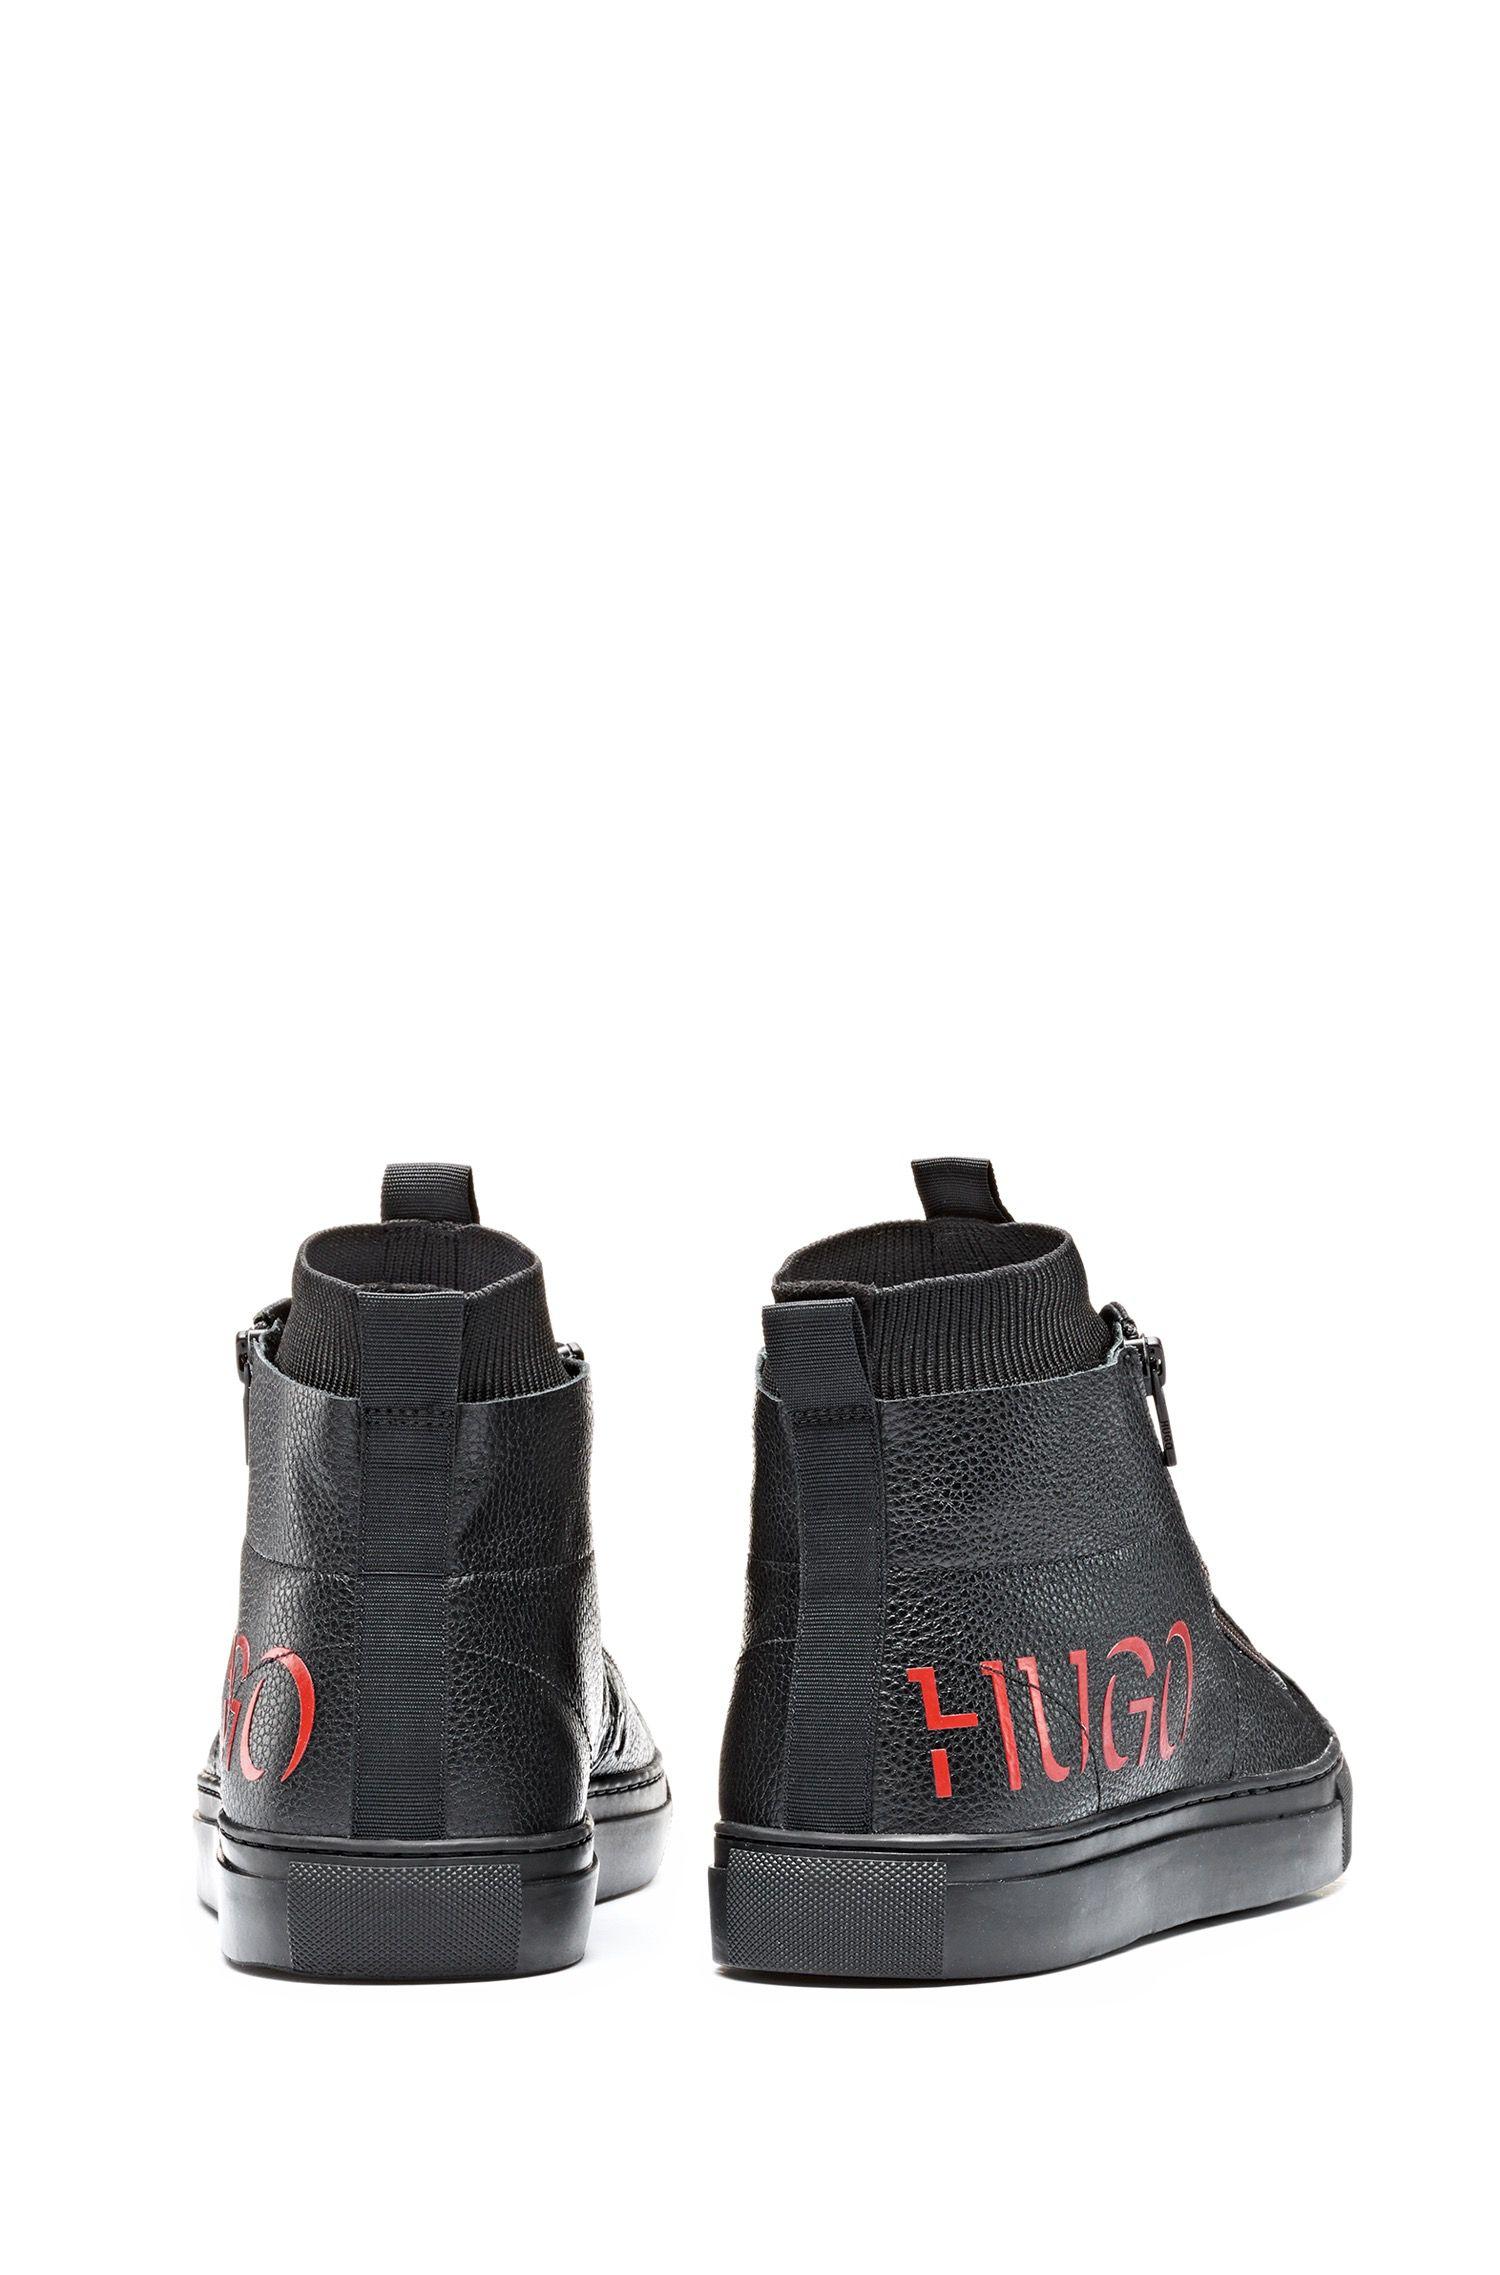 hugo boss futurism shoes